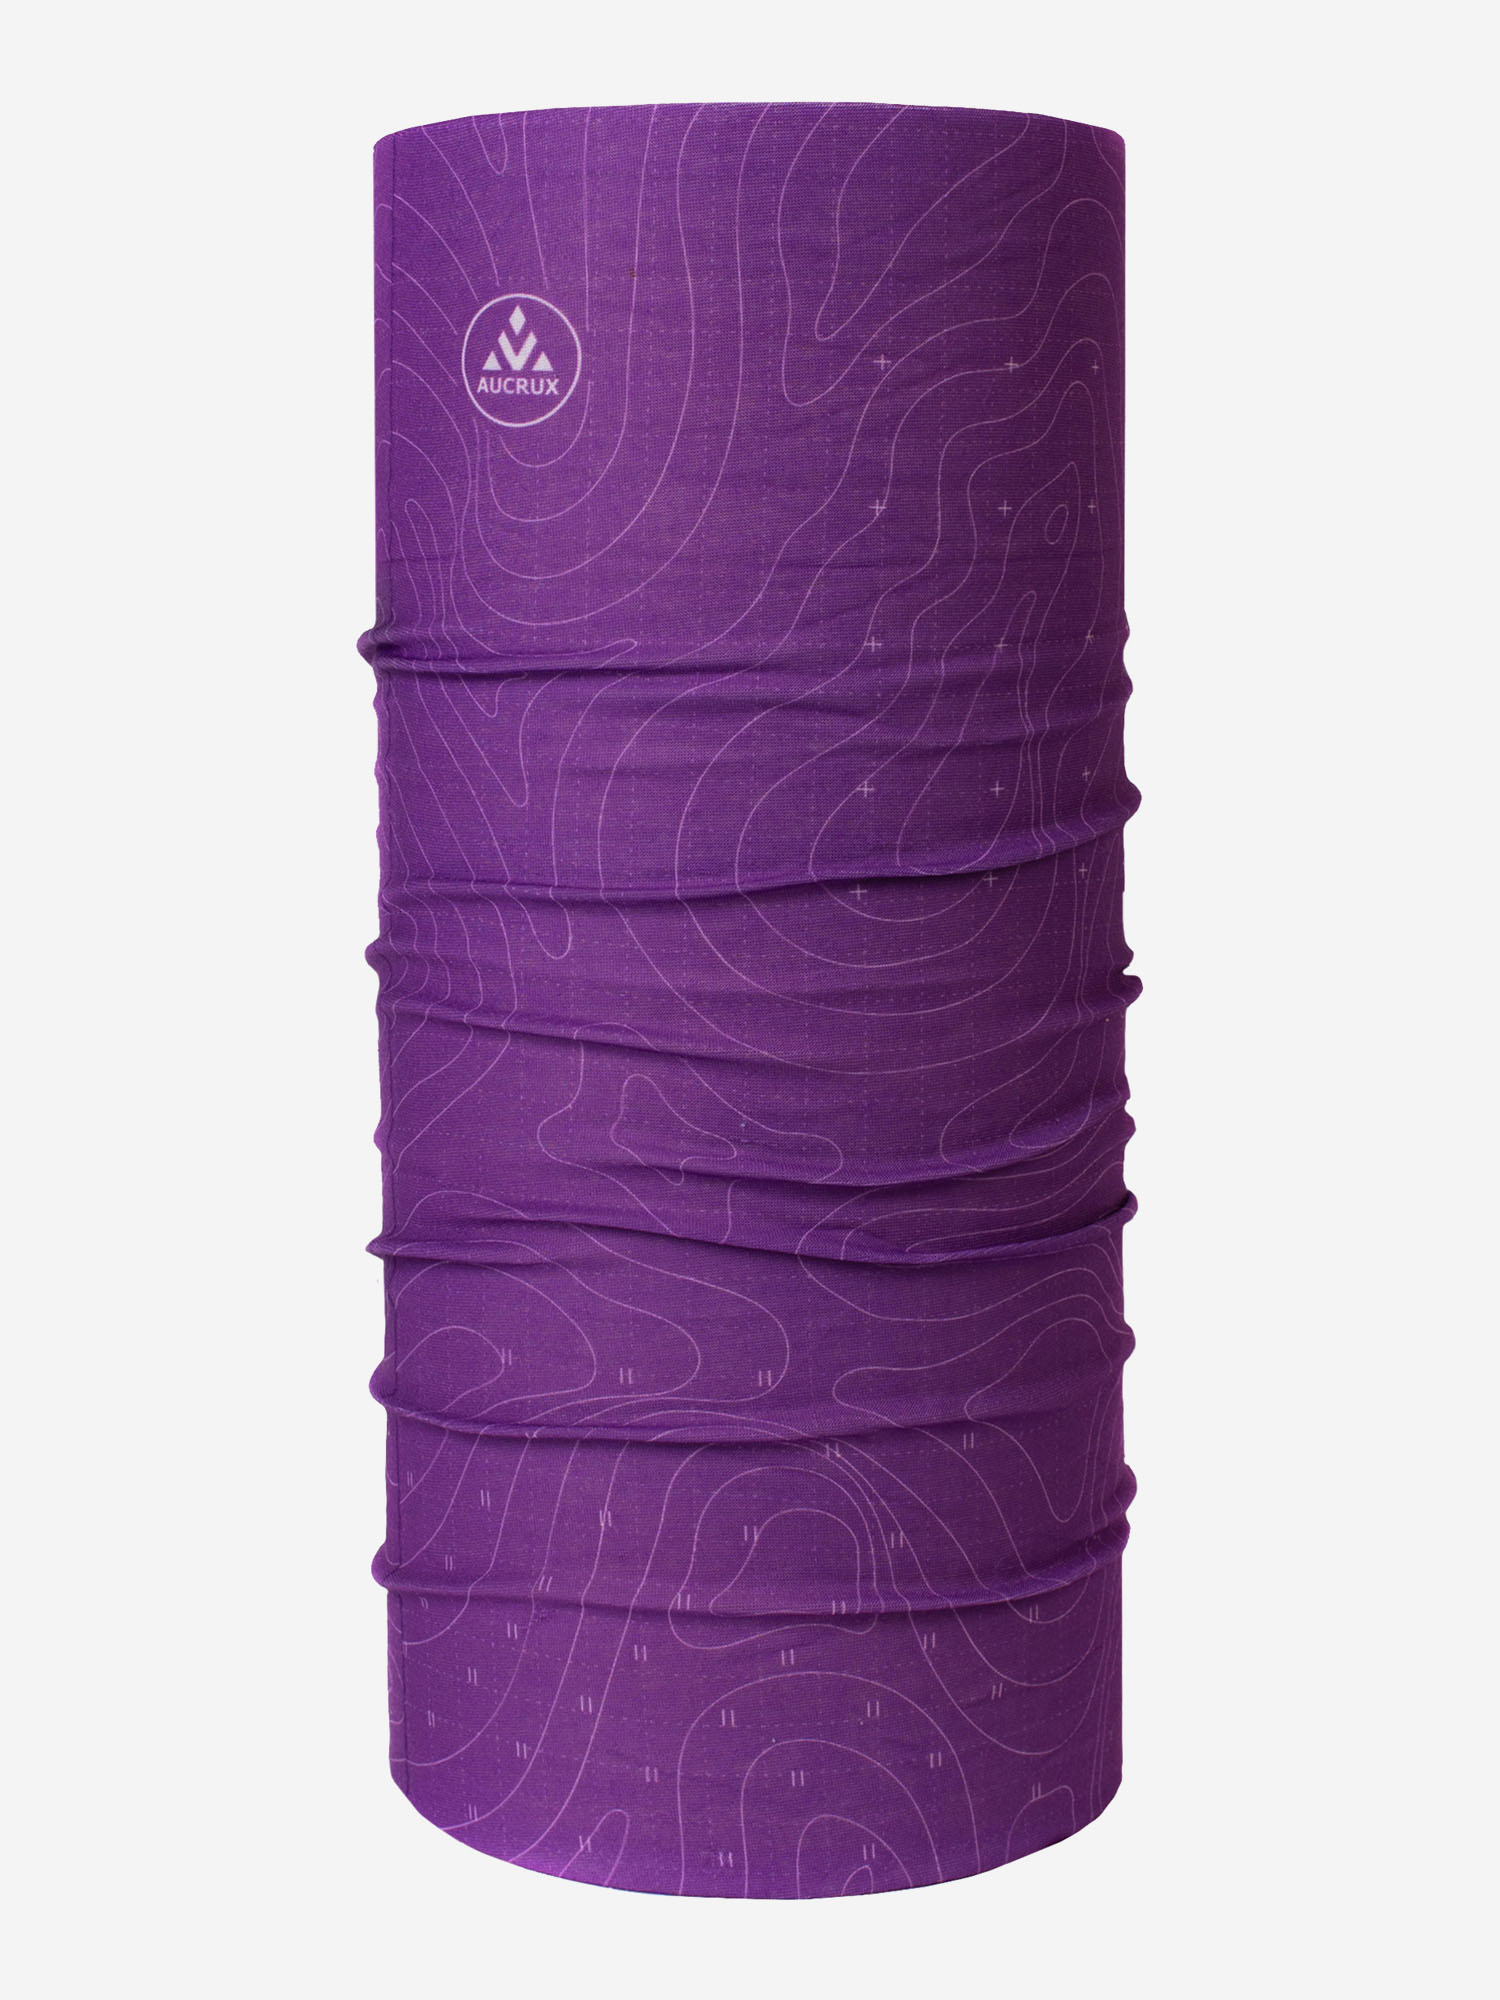 Бафф Aucrux Standard 21.4S, Фиолетовый